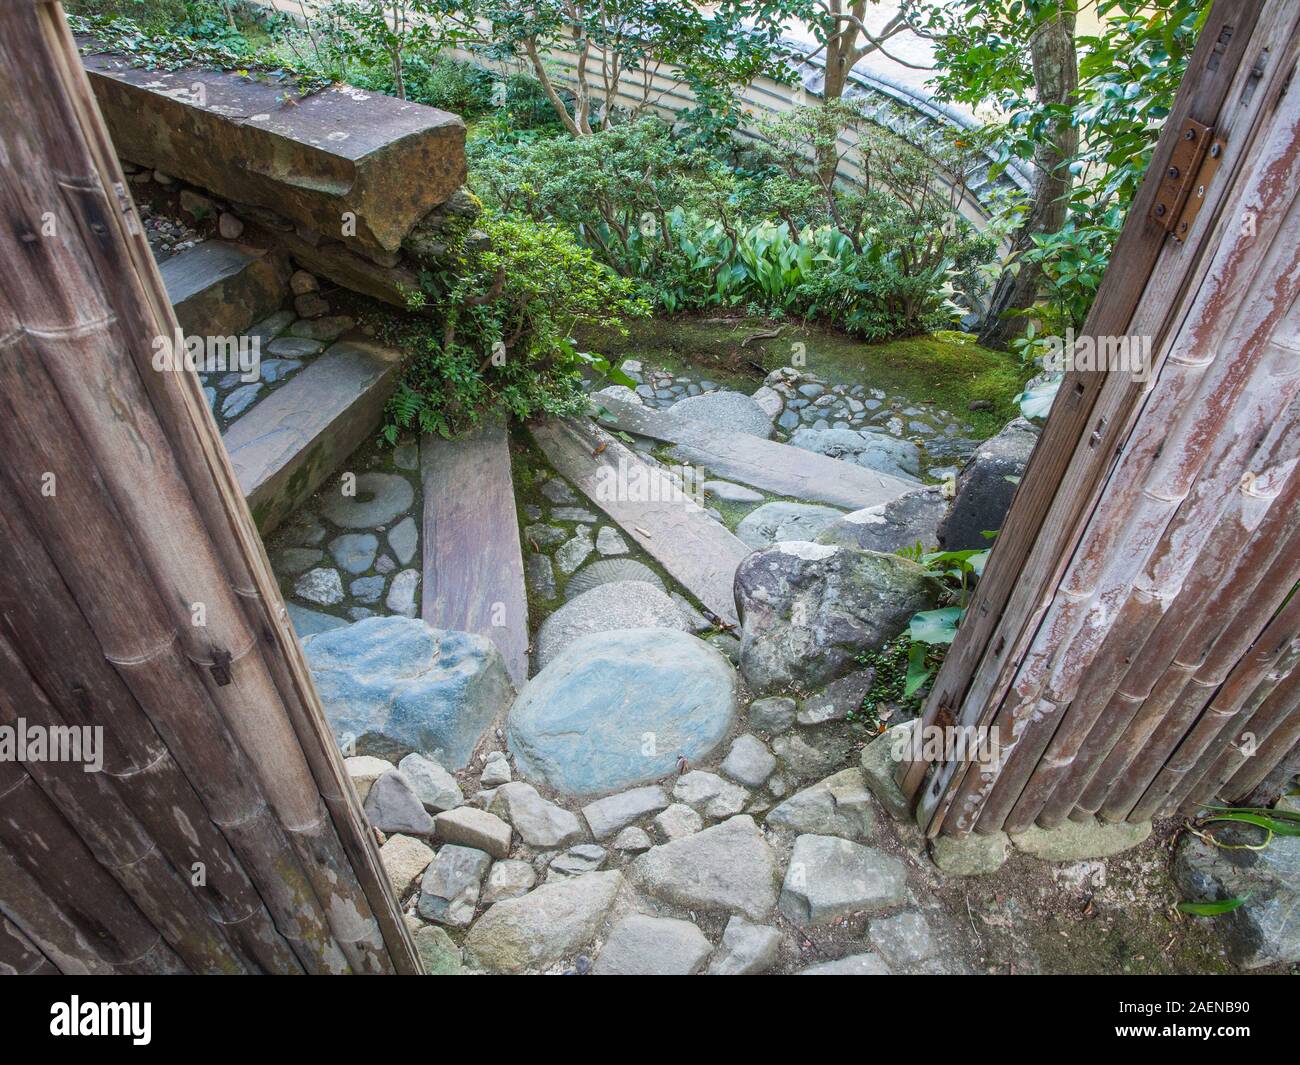 Mirando a través de pasarela de bambú, una curva en el camino de piedra para el enfoque de la puerta de entrada, azulejos pared superior a continuación, Garyusanso, Ozu, Ehime, Shikoku, Japón Foto de stock